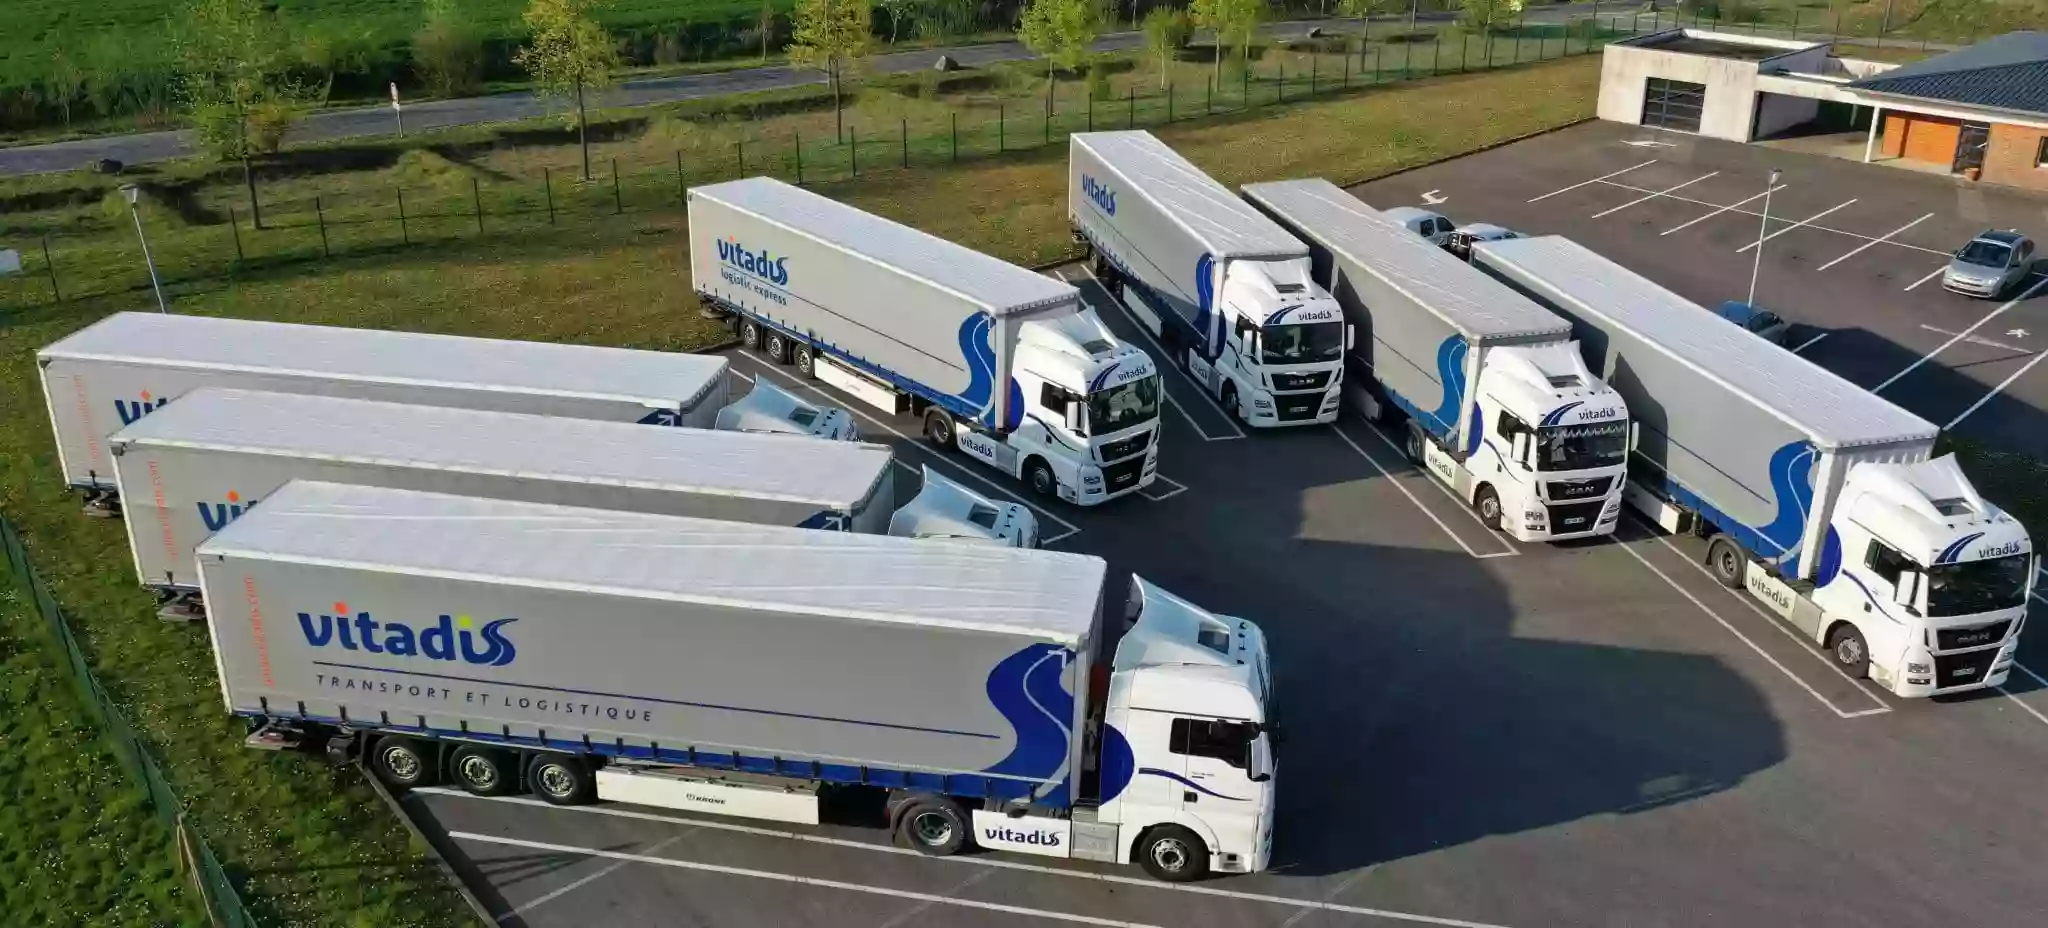 Vitadis Transport & Logistique